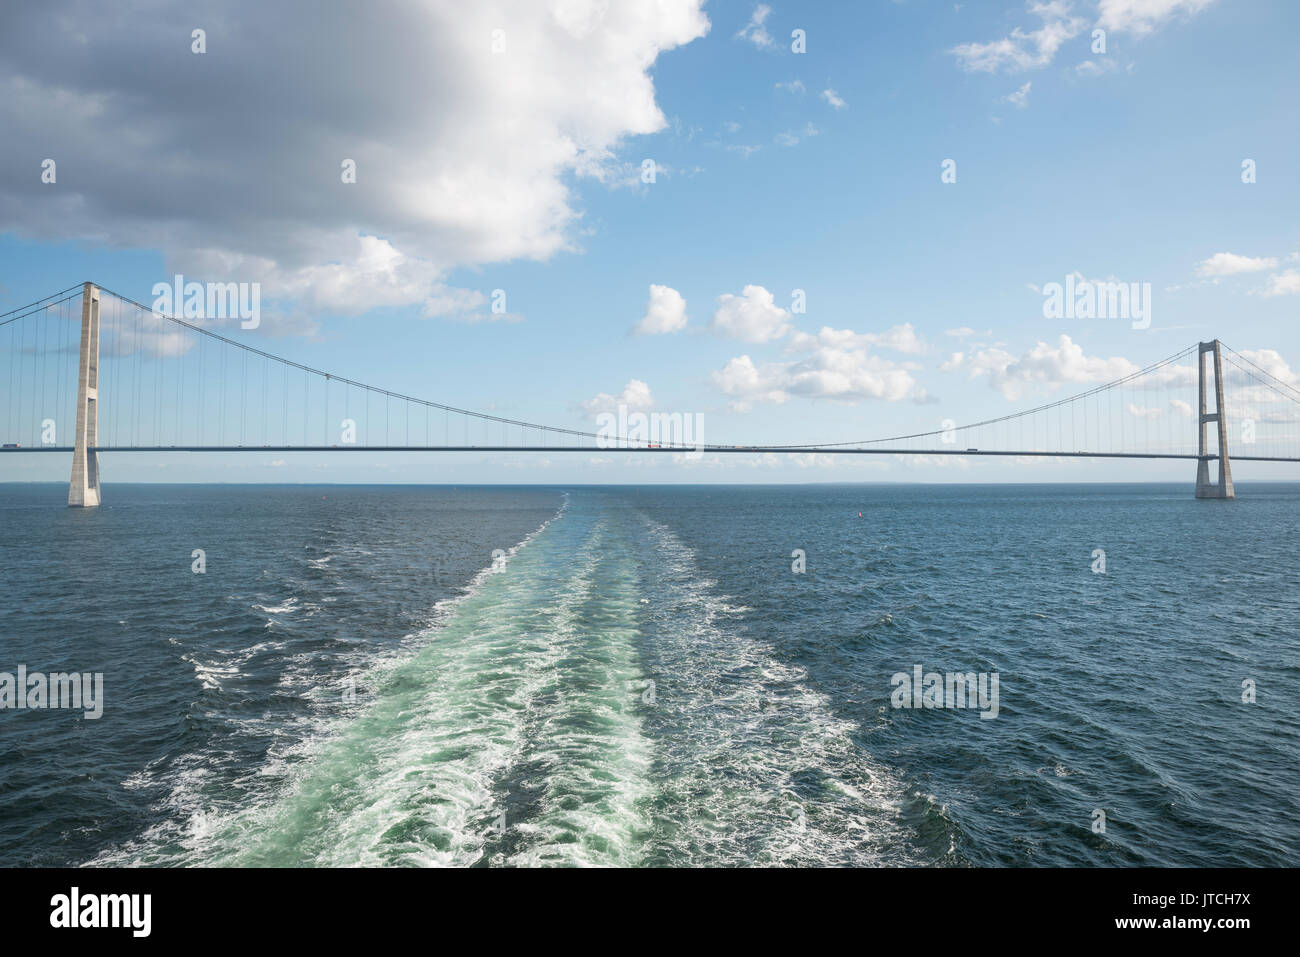 Überquerung der Hängebrücke Großer Belt in Dänemark zwischen Seeland und Fünen mit einem Boot Stockfoto